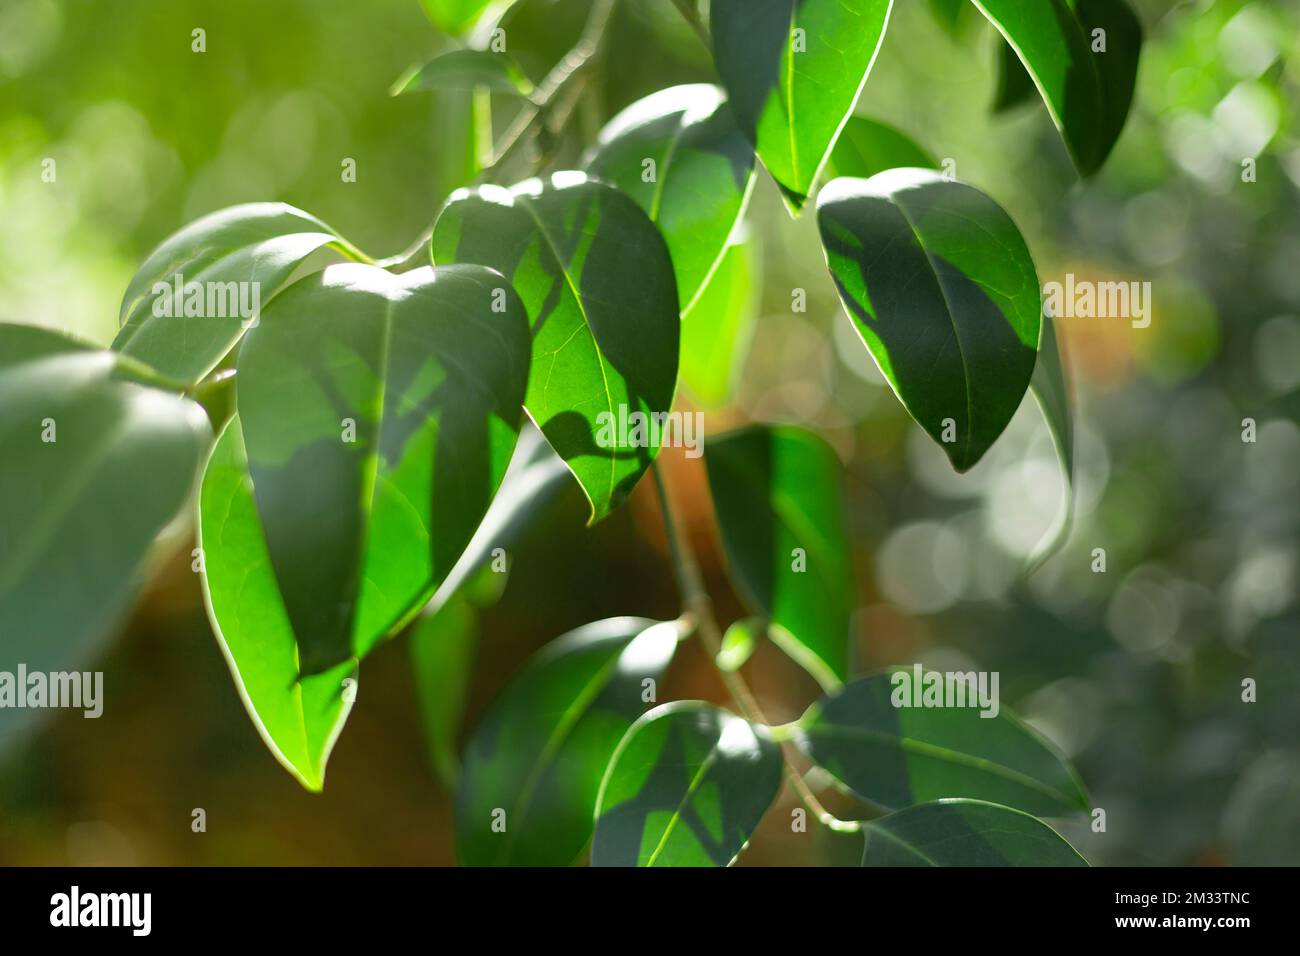 Detalle de primer plano de hojas verdes de un árbol. Fondo de la naturaleza. Foto de stock